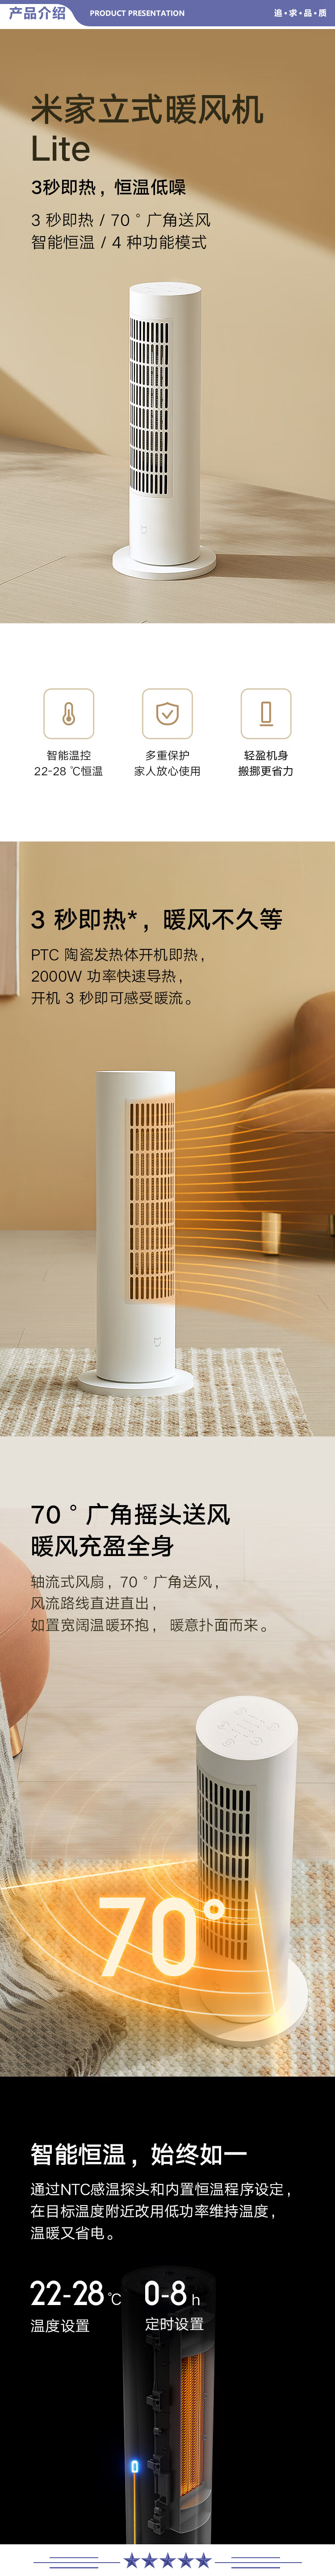 小米 LSNFJ02LX 暖风机Lite 电暖气取暖器电热暖气片 立式暖风机家用电暖器 开机即热 智能恒温节能4种模式智能互联 2.jpg